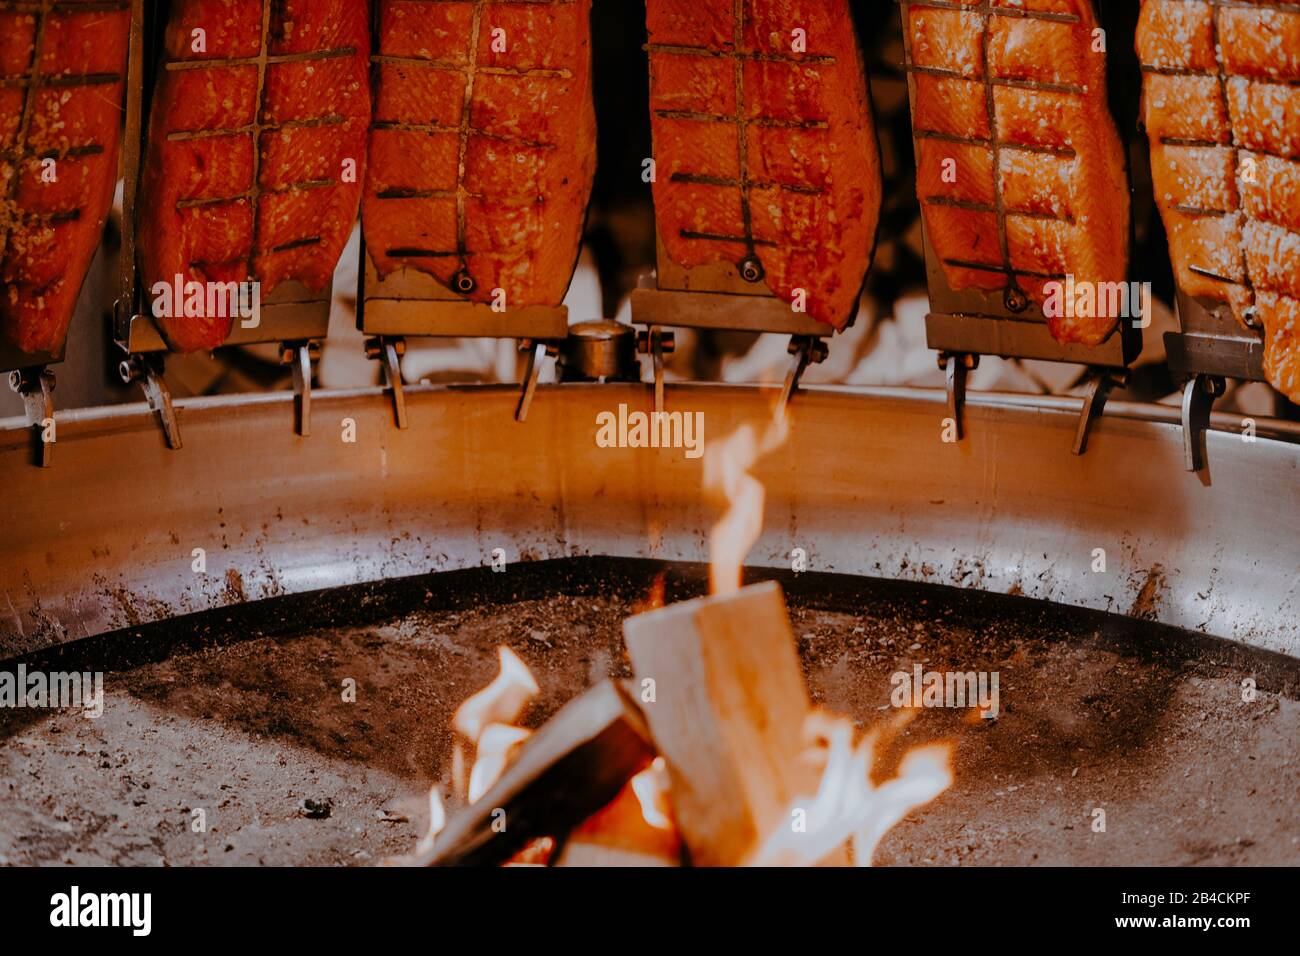 Salmone affumicato con fuoco aperto al mercatino di Natale ad Amburgo, Germania. Foto Stock